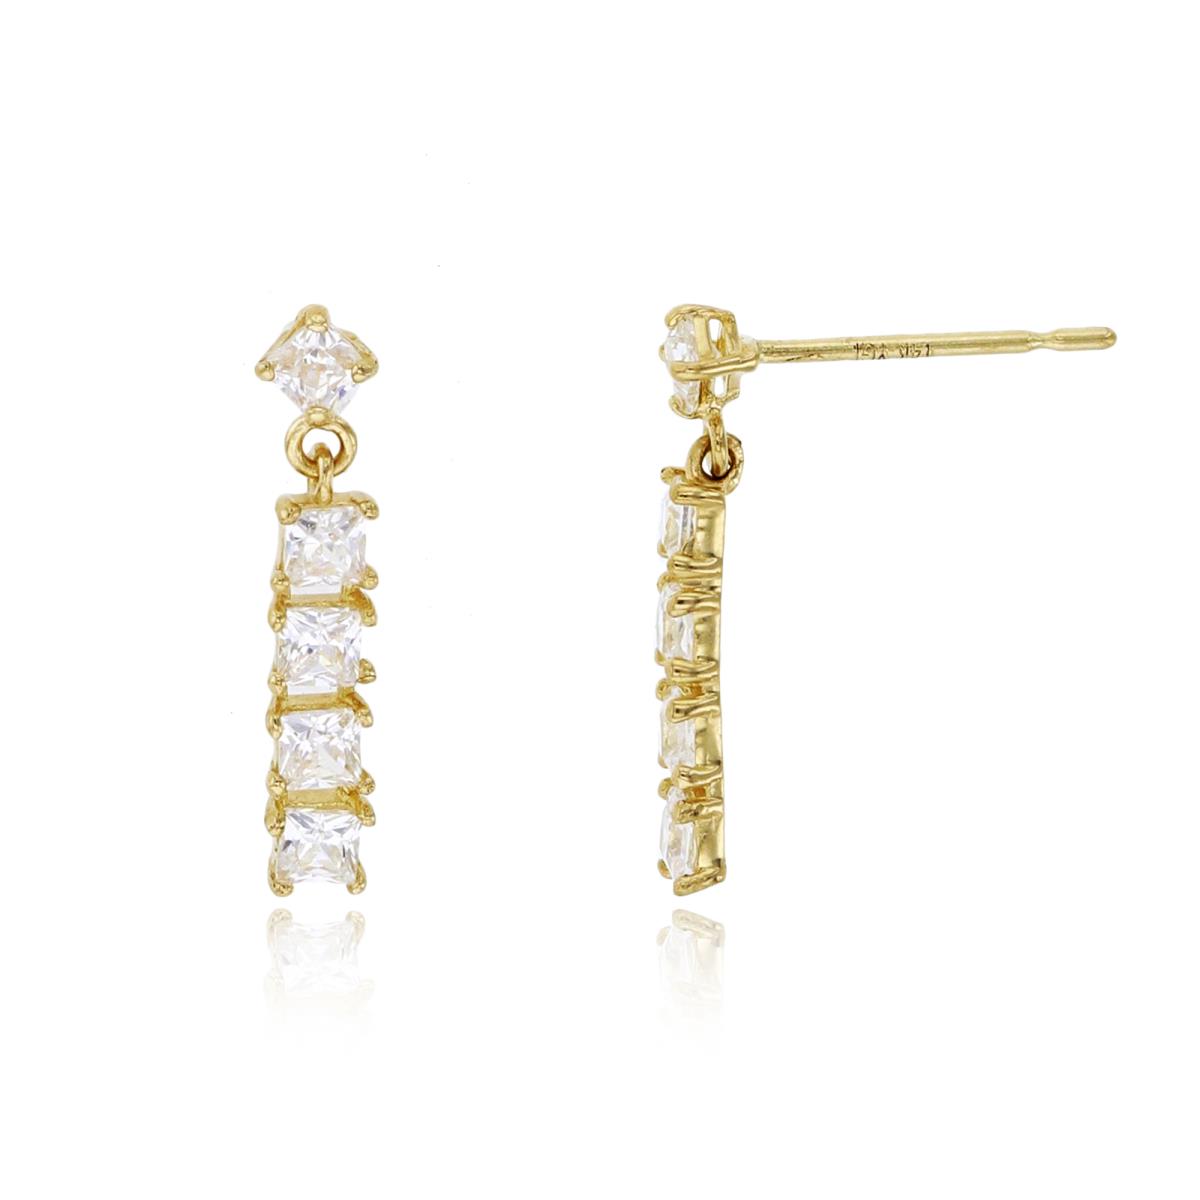 10K Yellow Gold 5-Stone 2mm Princess Cut CZ Dangling Earring